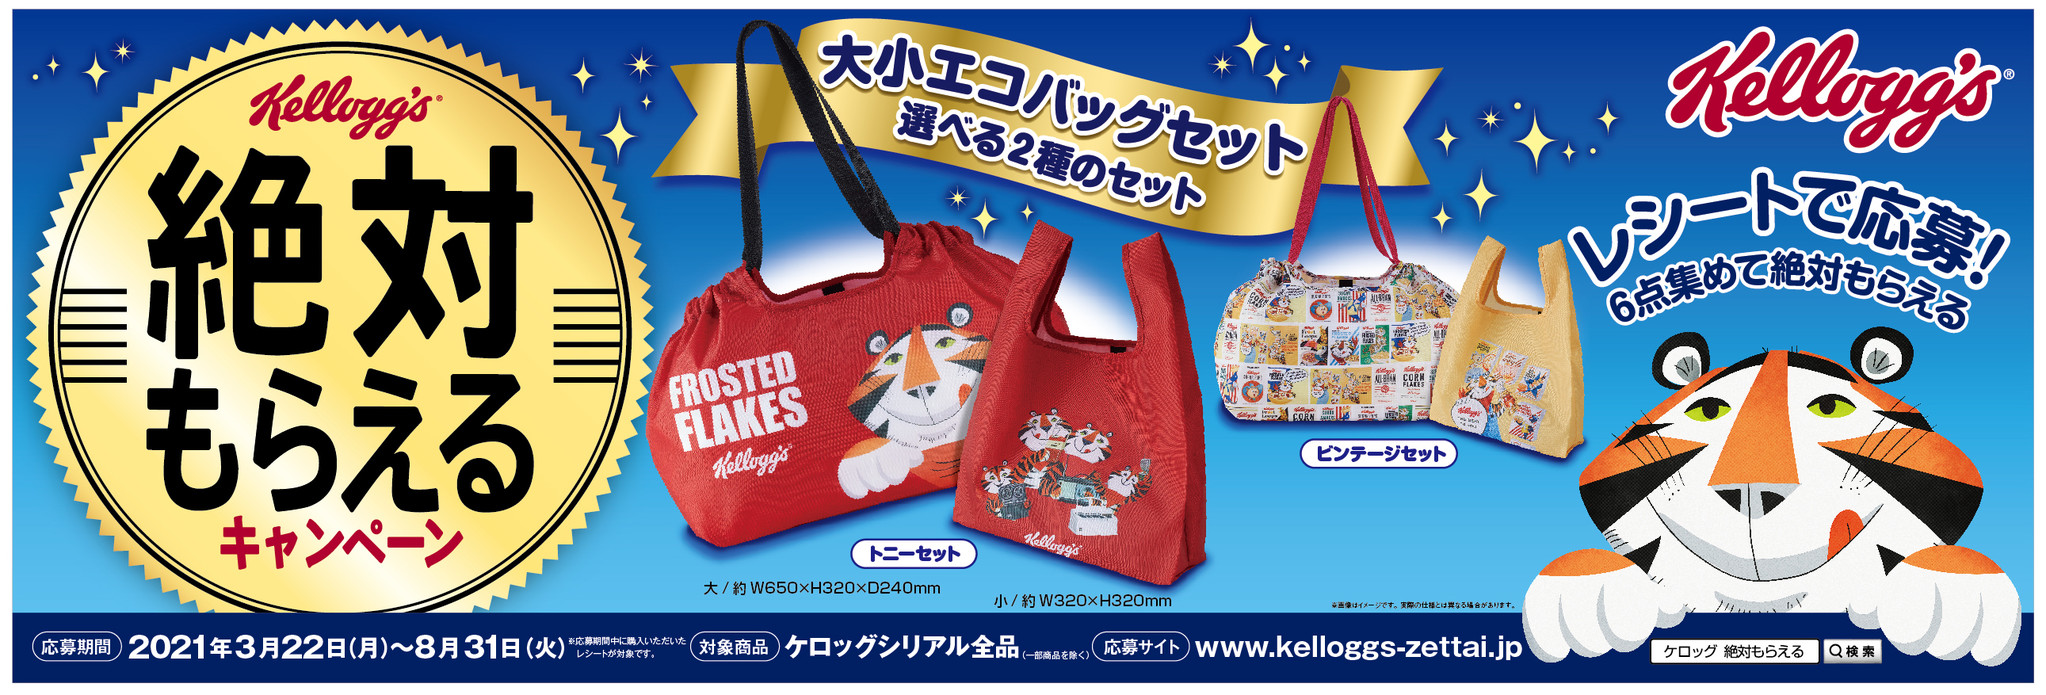 可愛い人気キャラクターの大小エコバッグセットが絶対もらえる ケロッグ 絶対もらえるキャンペーン 3月22日スタート 日本ケロッグ 合同会社のプレスリリース